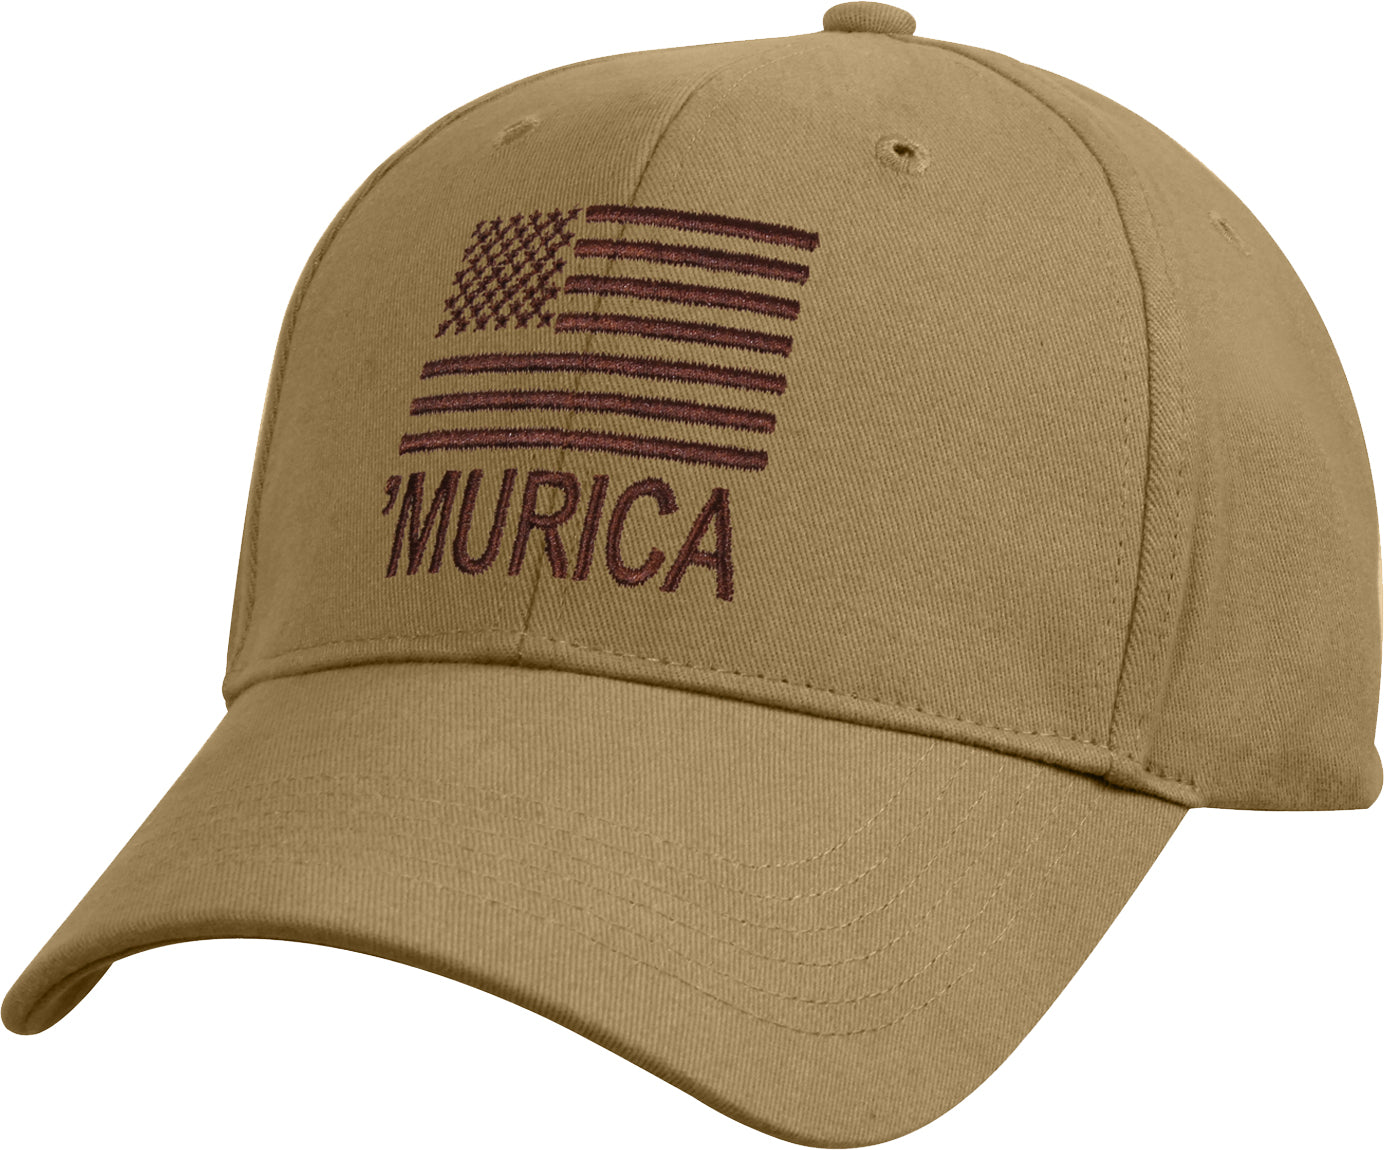 Deluxe Murica Low Profile Cap